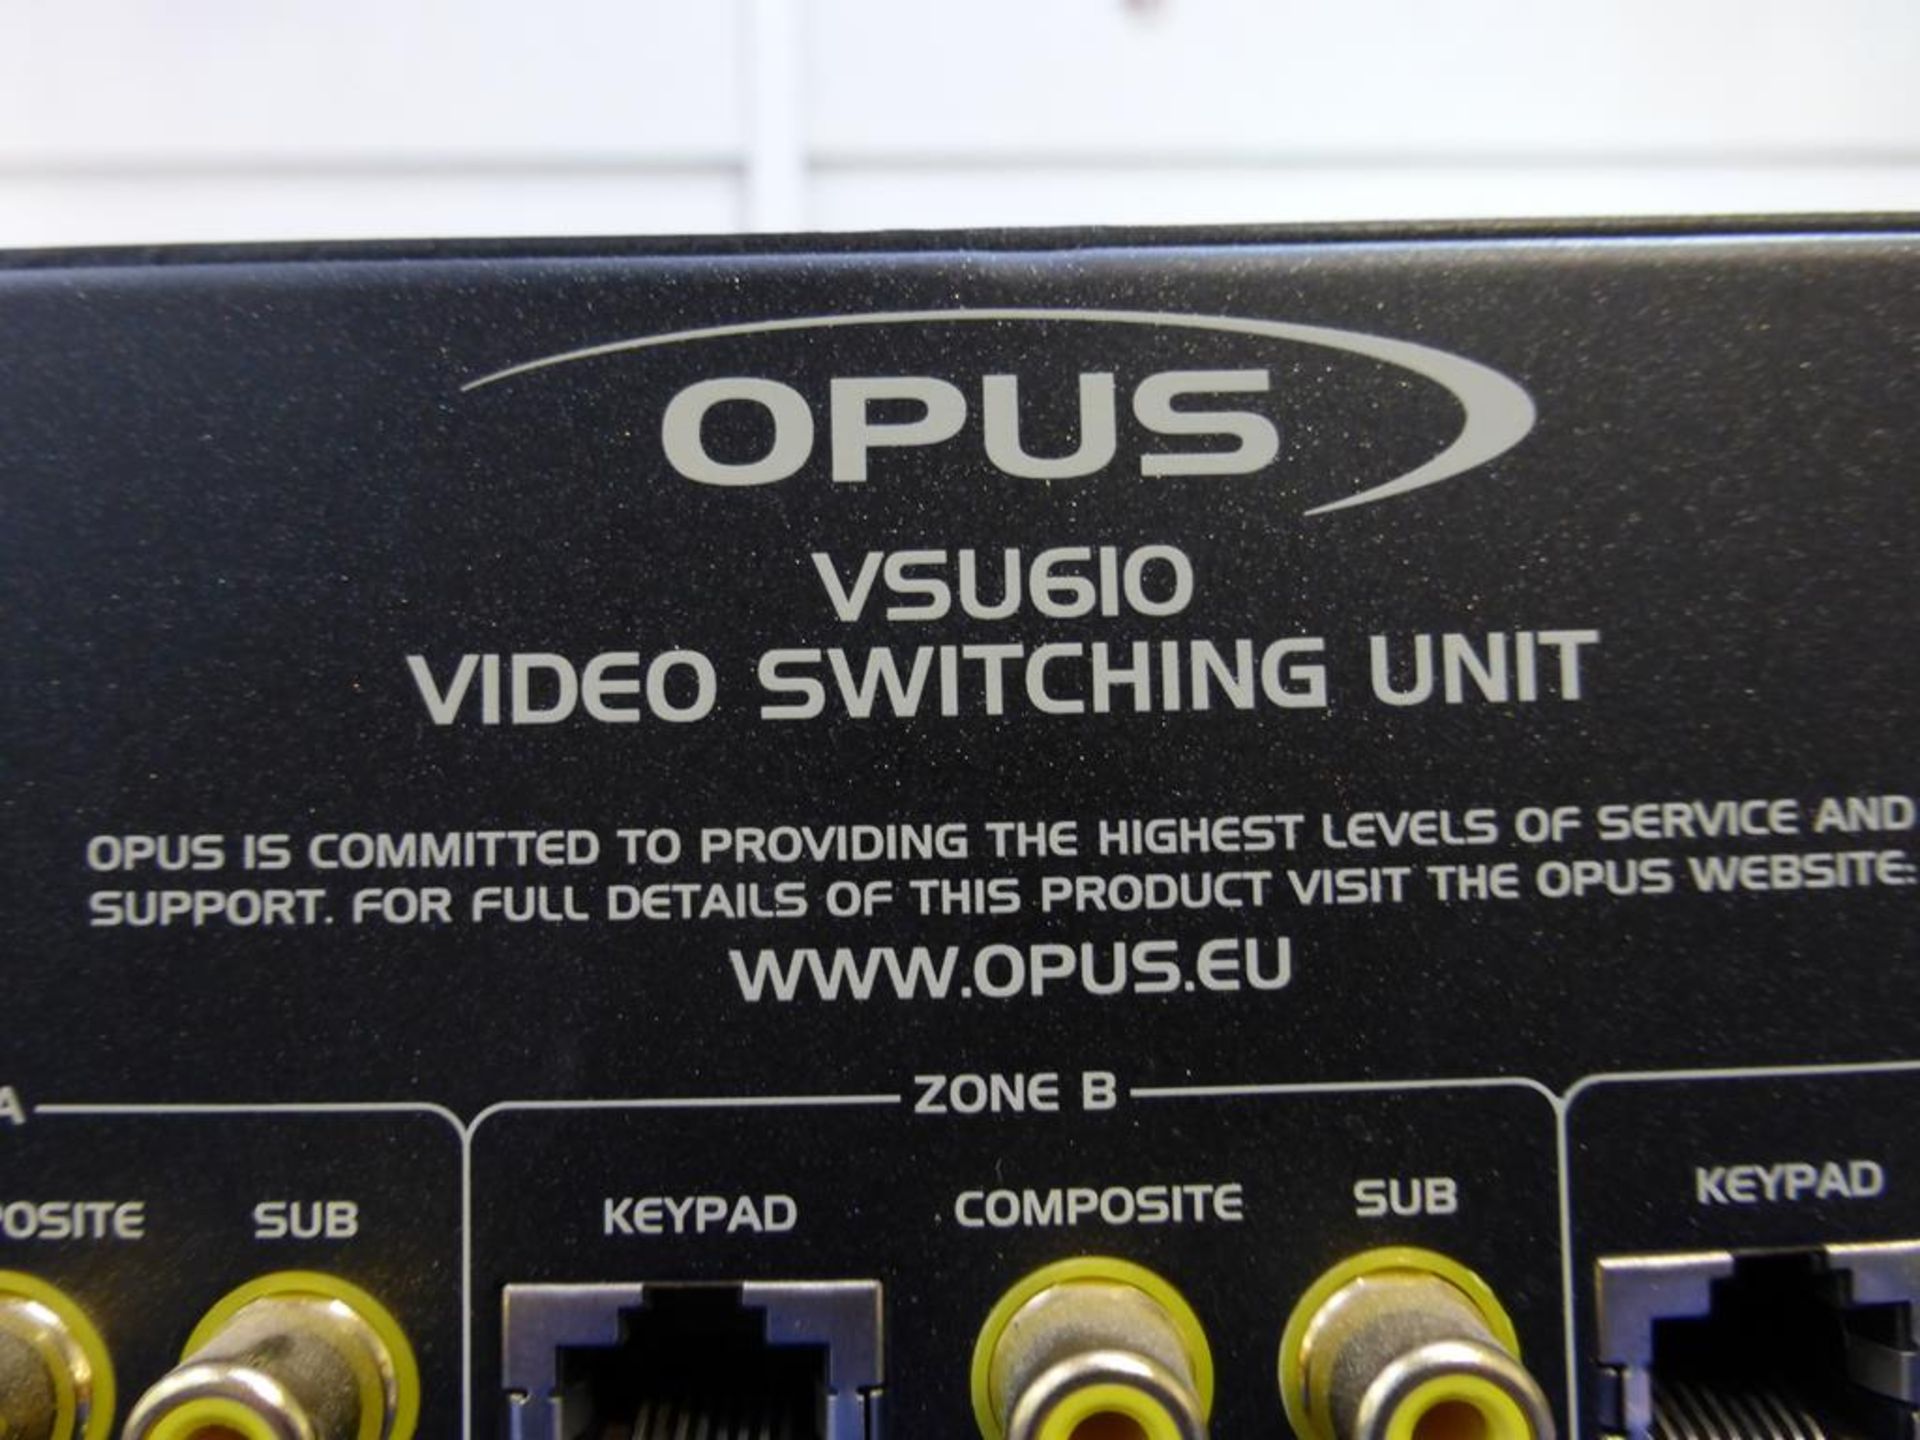 Opus VSU610 - Image 5 of 5